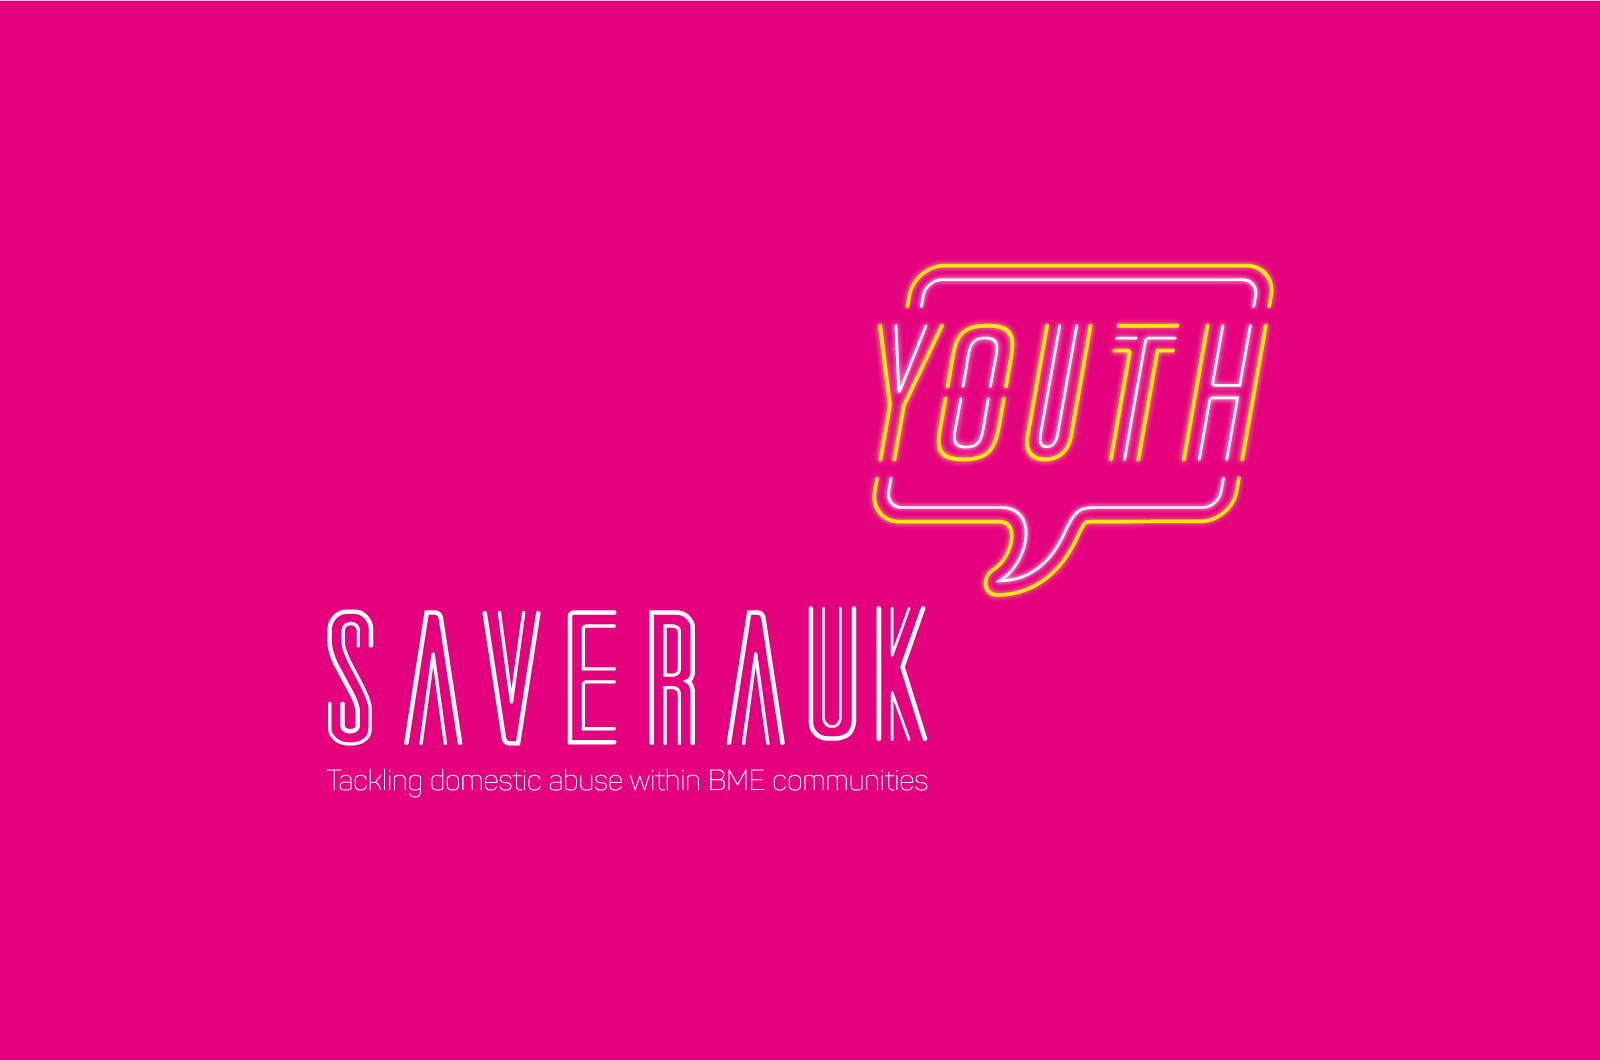 Savera Youth Brand Neon 03